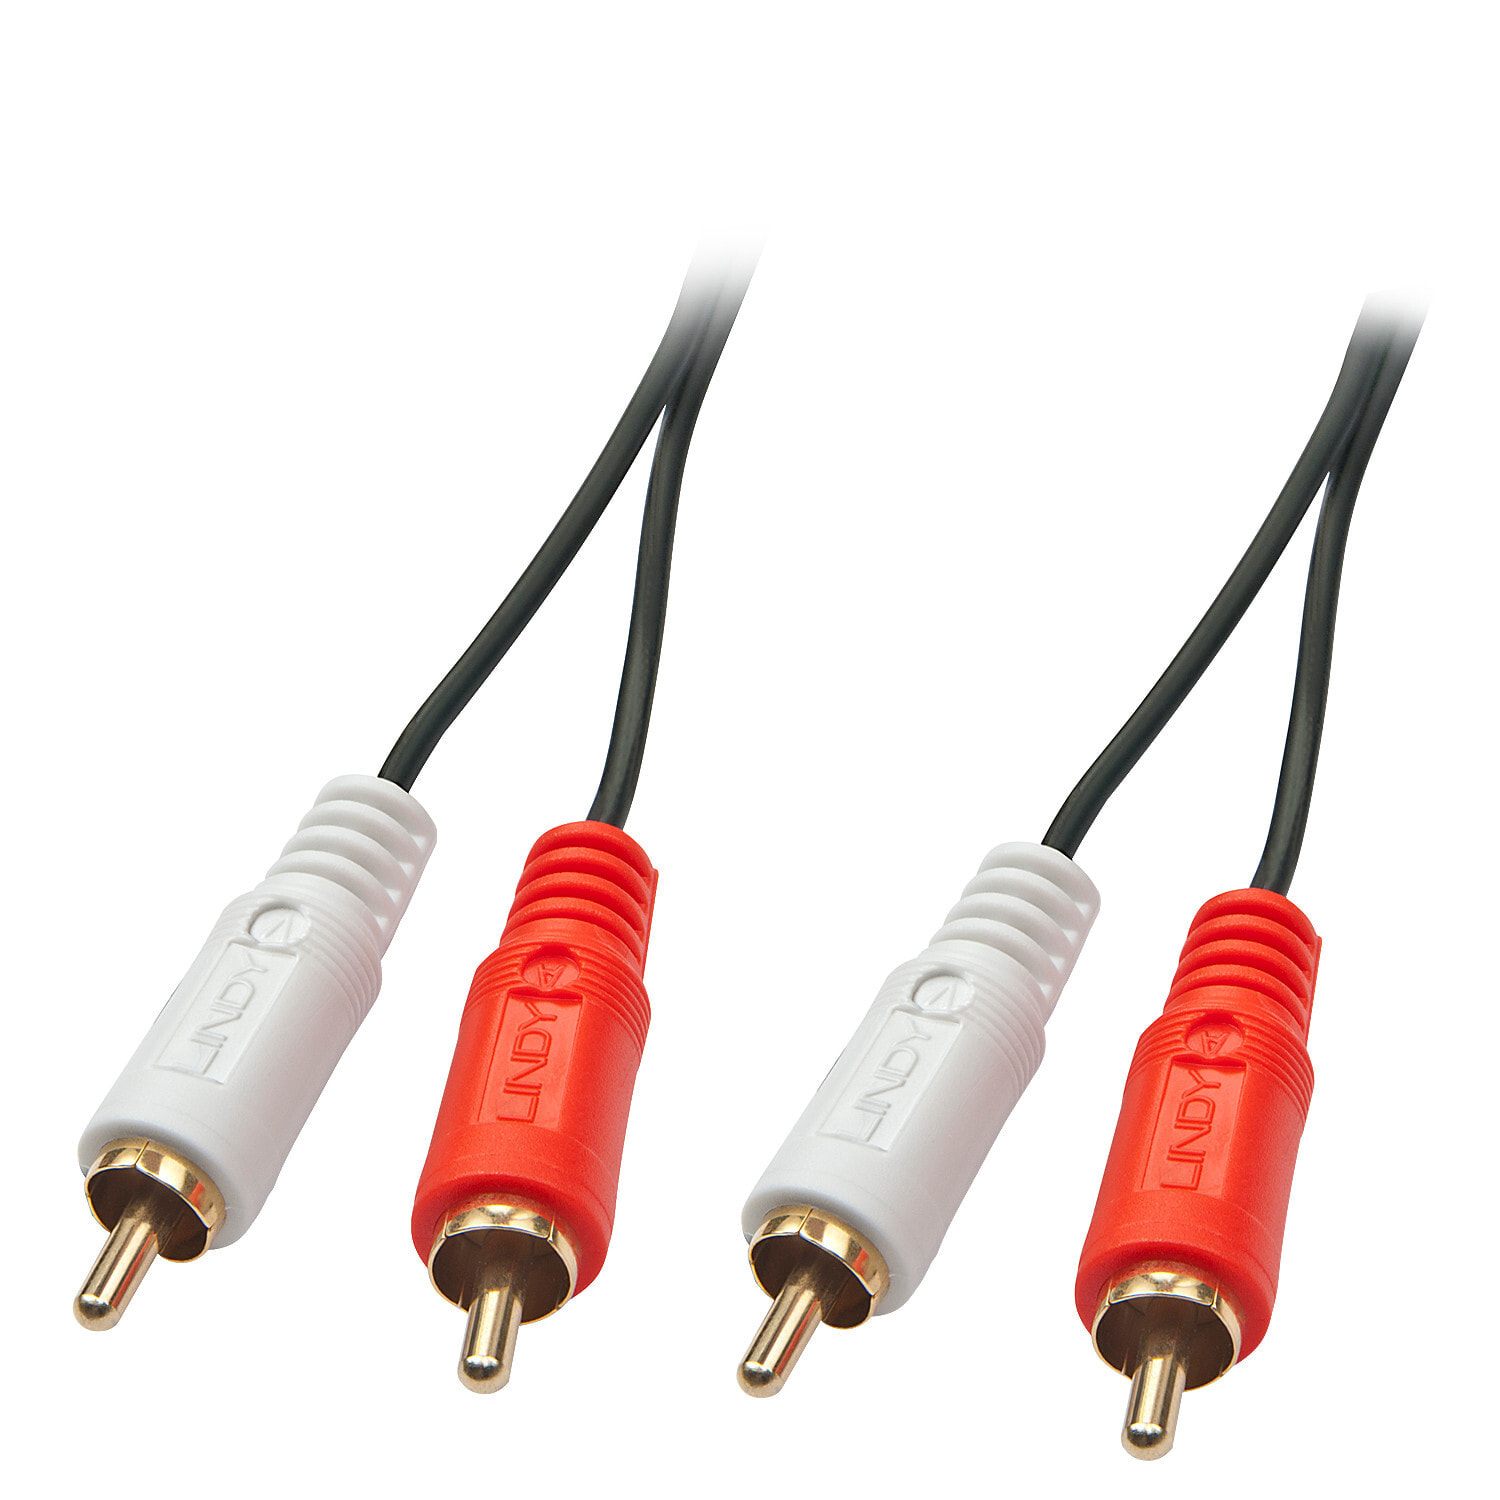 Lindy 35661 аудио кабель 2 m 2 x RCA Красный, Белый